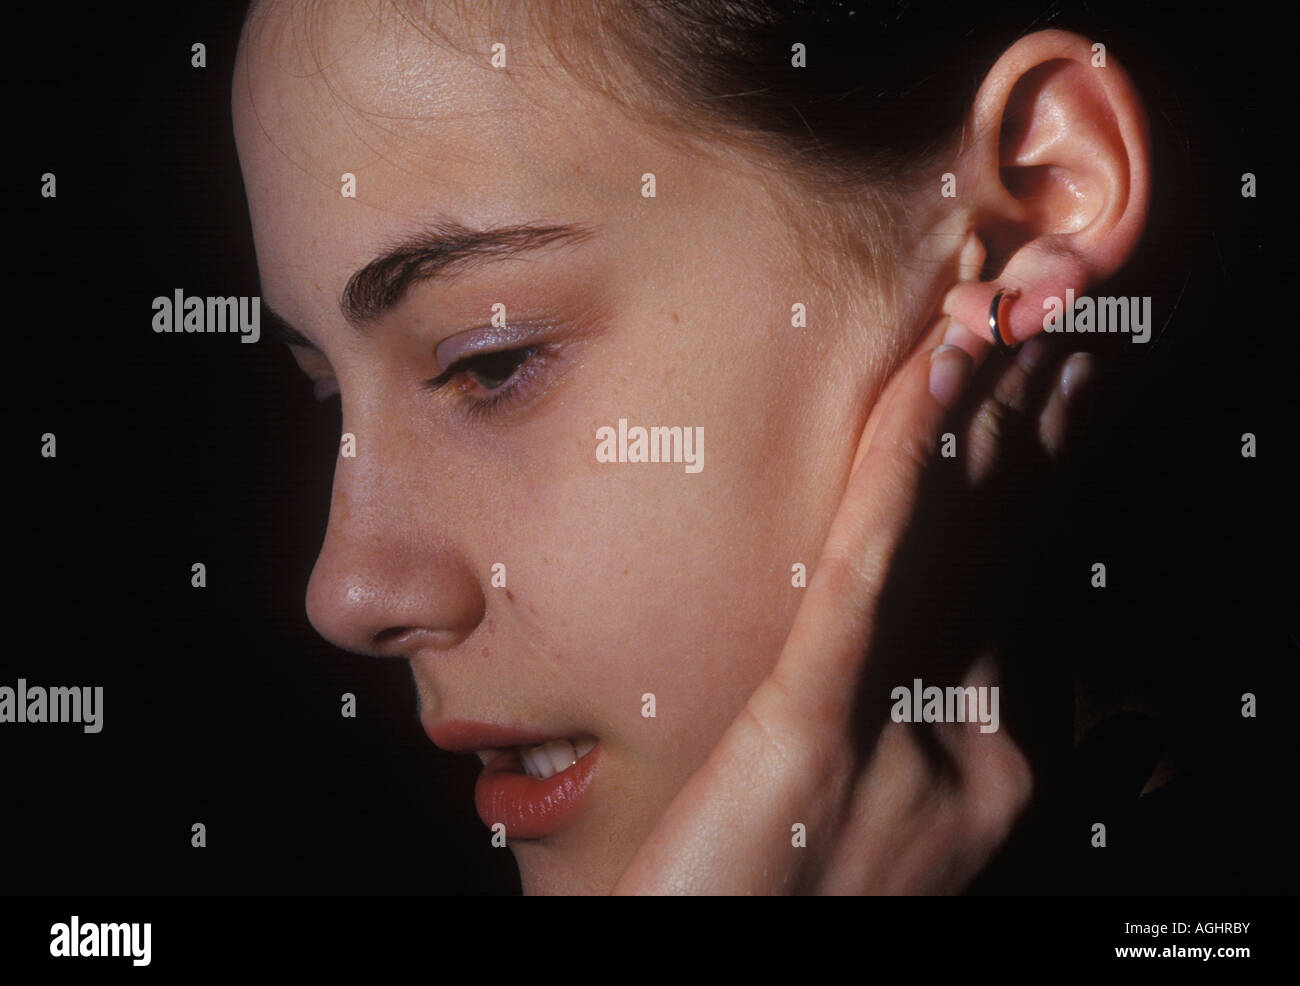 Adolescente jugando con un infectado earing Foto de stock